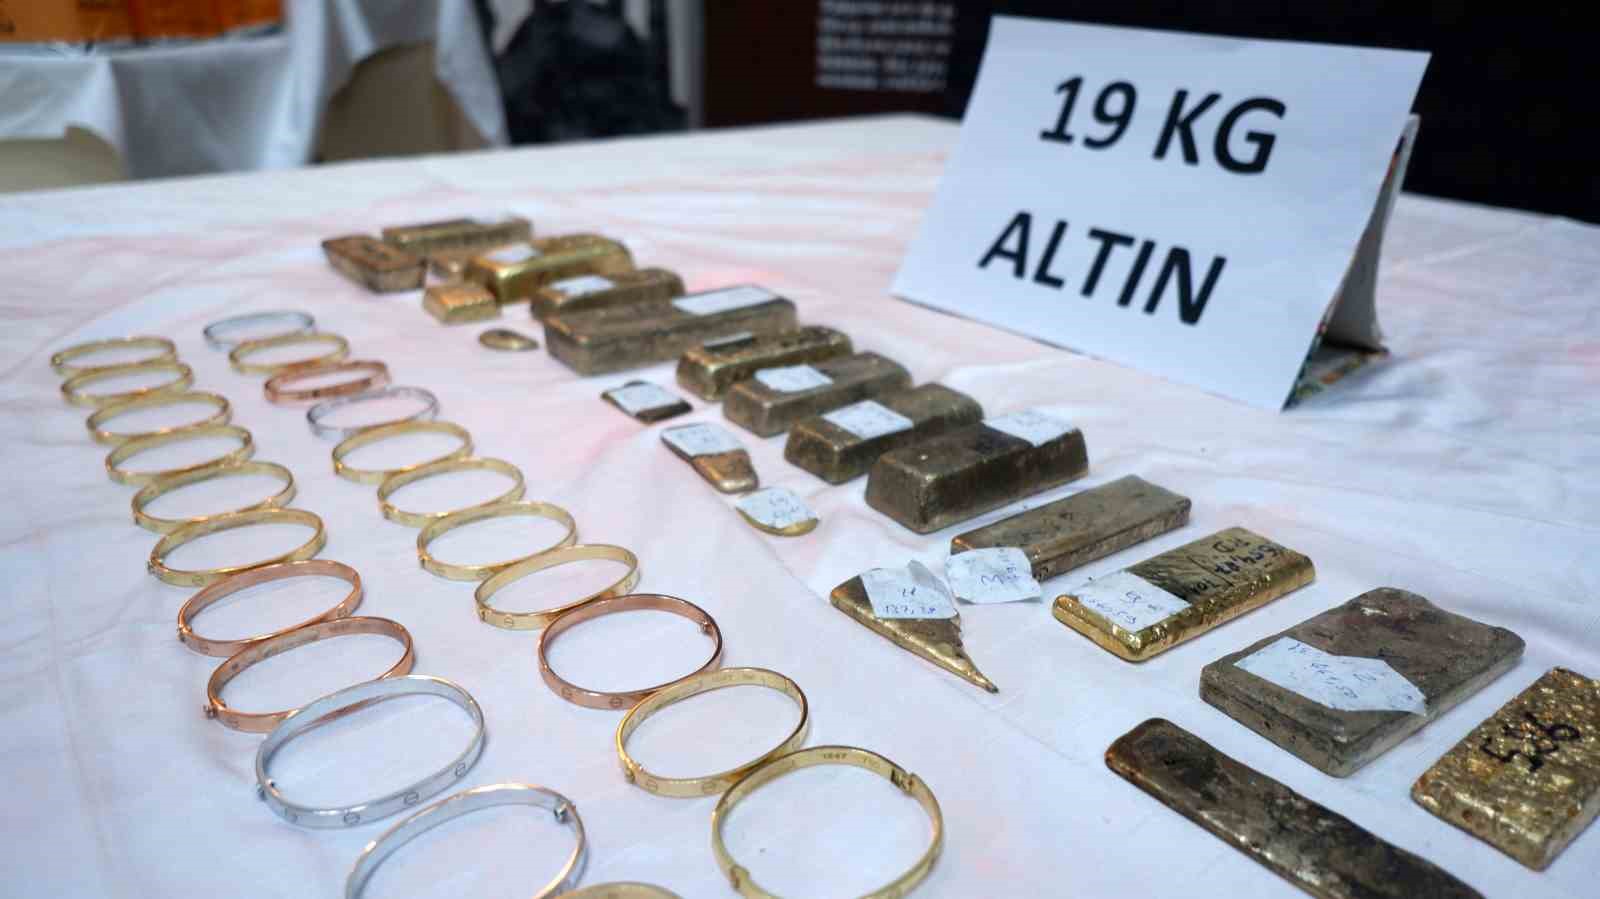 Altın kaçakçılarına darbe, 40 milyon lira değerinde altın ele geçirildi
